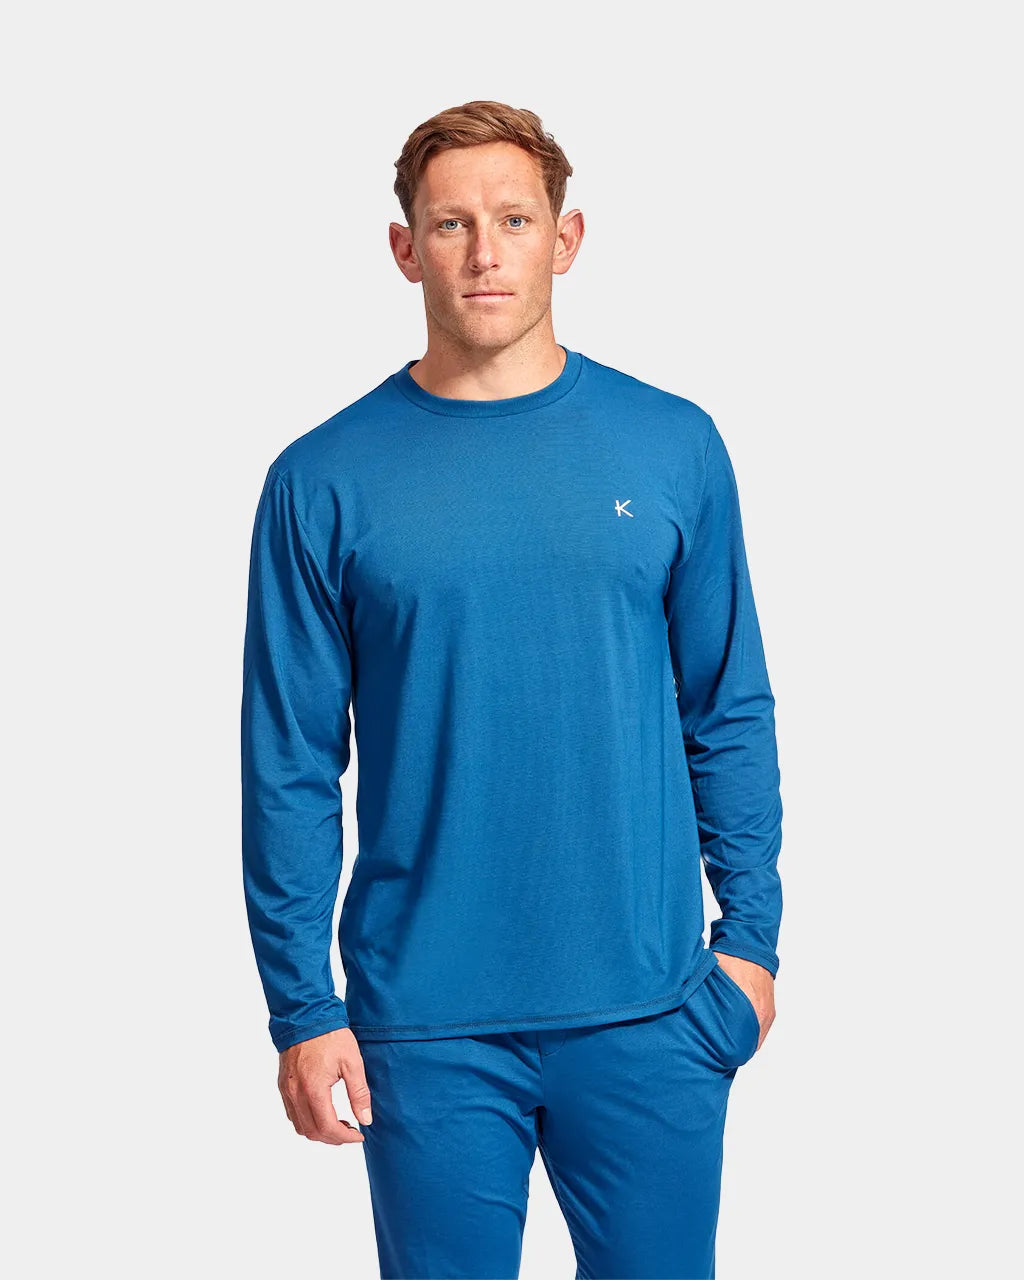 KYMIRA RECHARD Infrared Sleepwear Men's Top - Blue